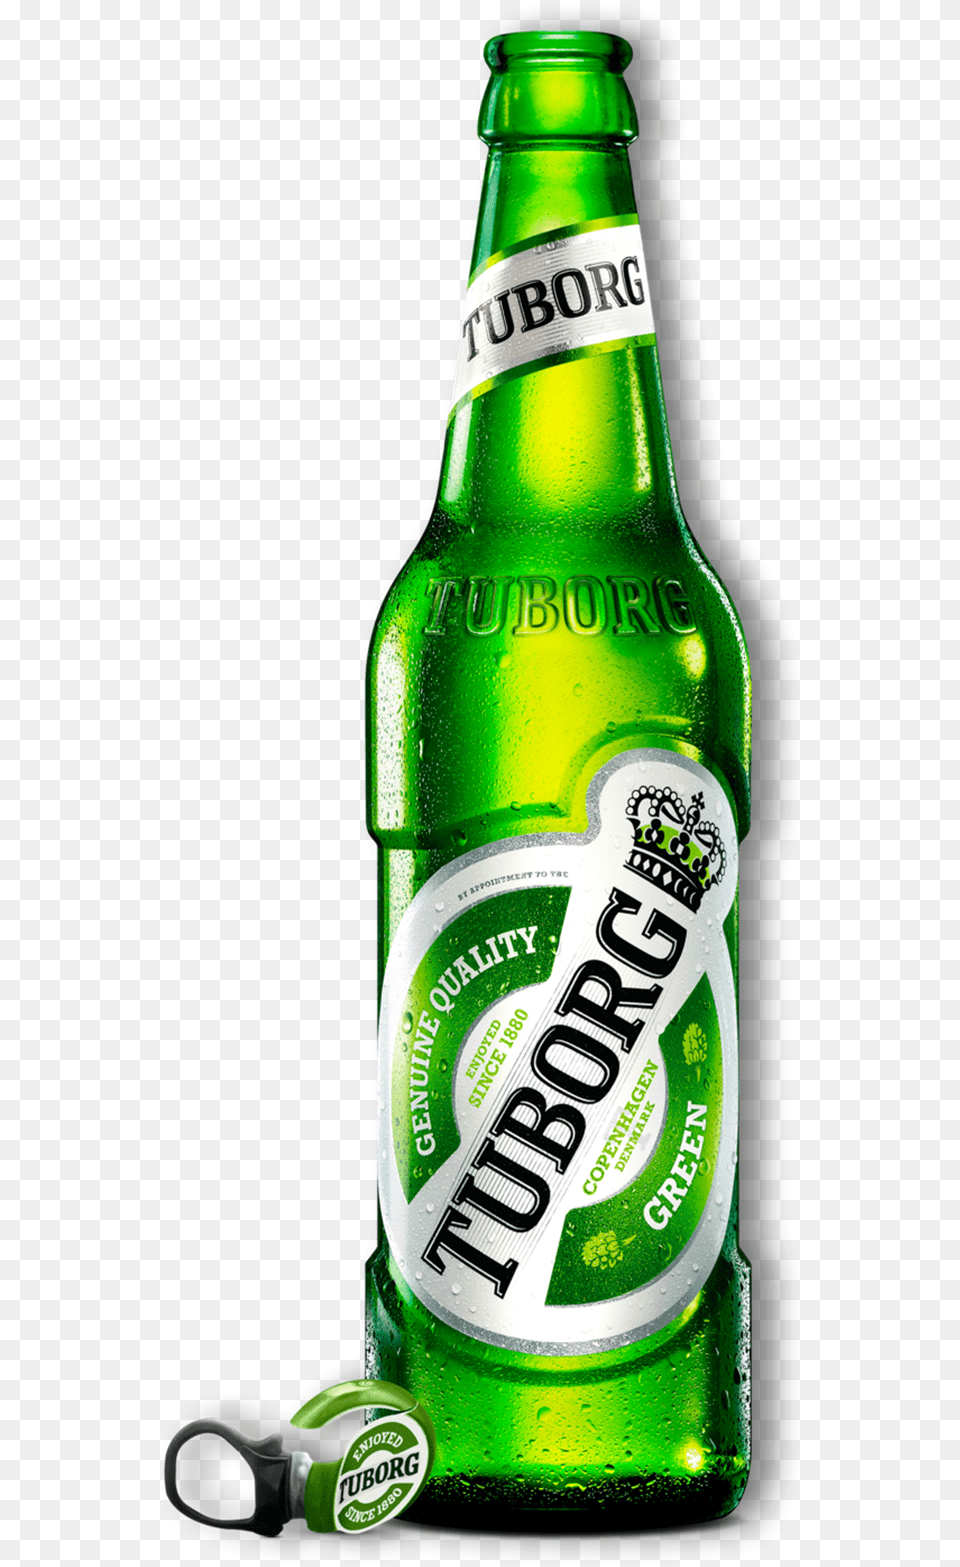 Tuborg Beer Bottle Logo, Alcohol, Beer Bottle, Beverage, Liquor Free Transparent Png